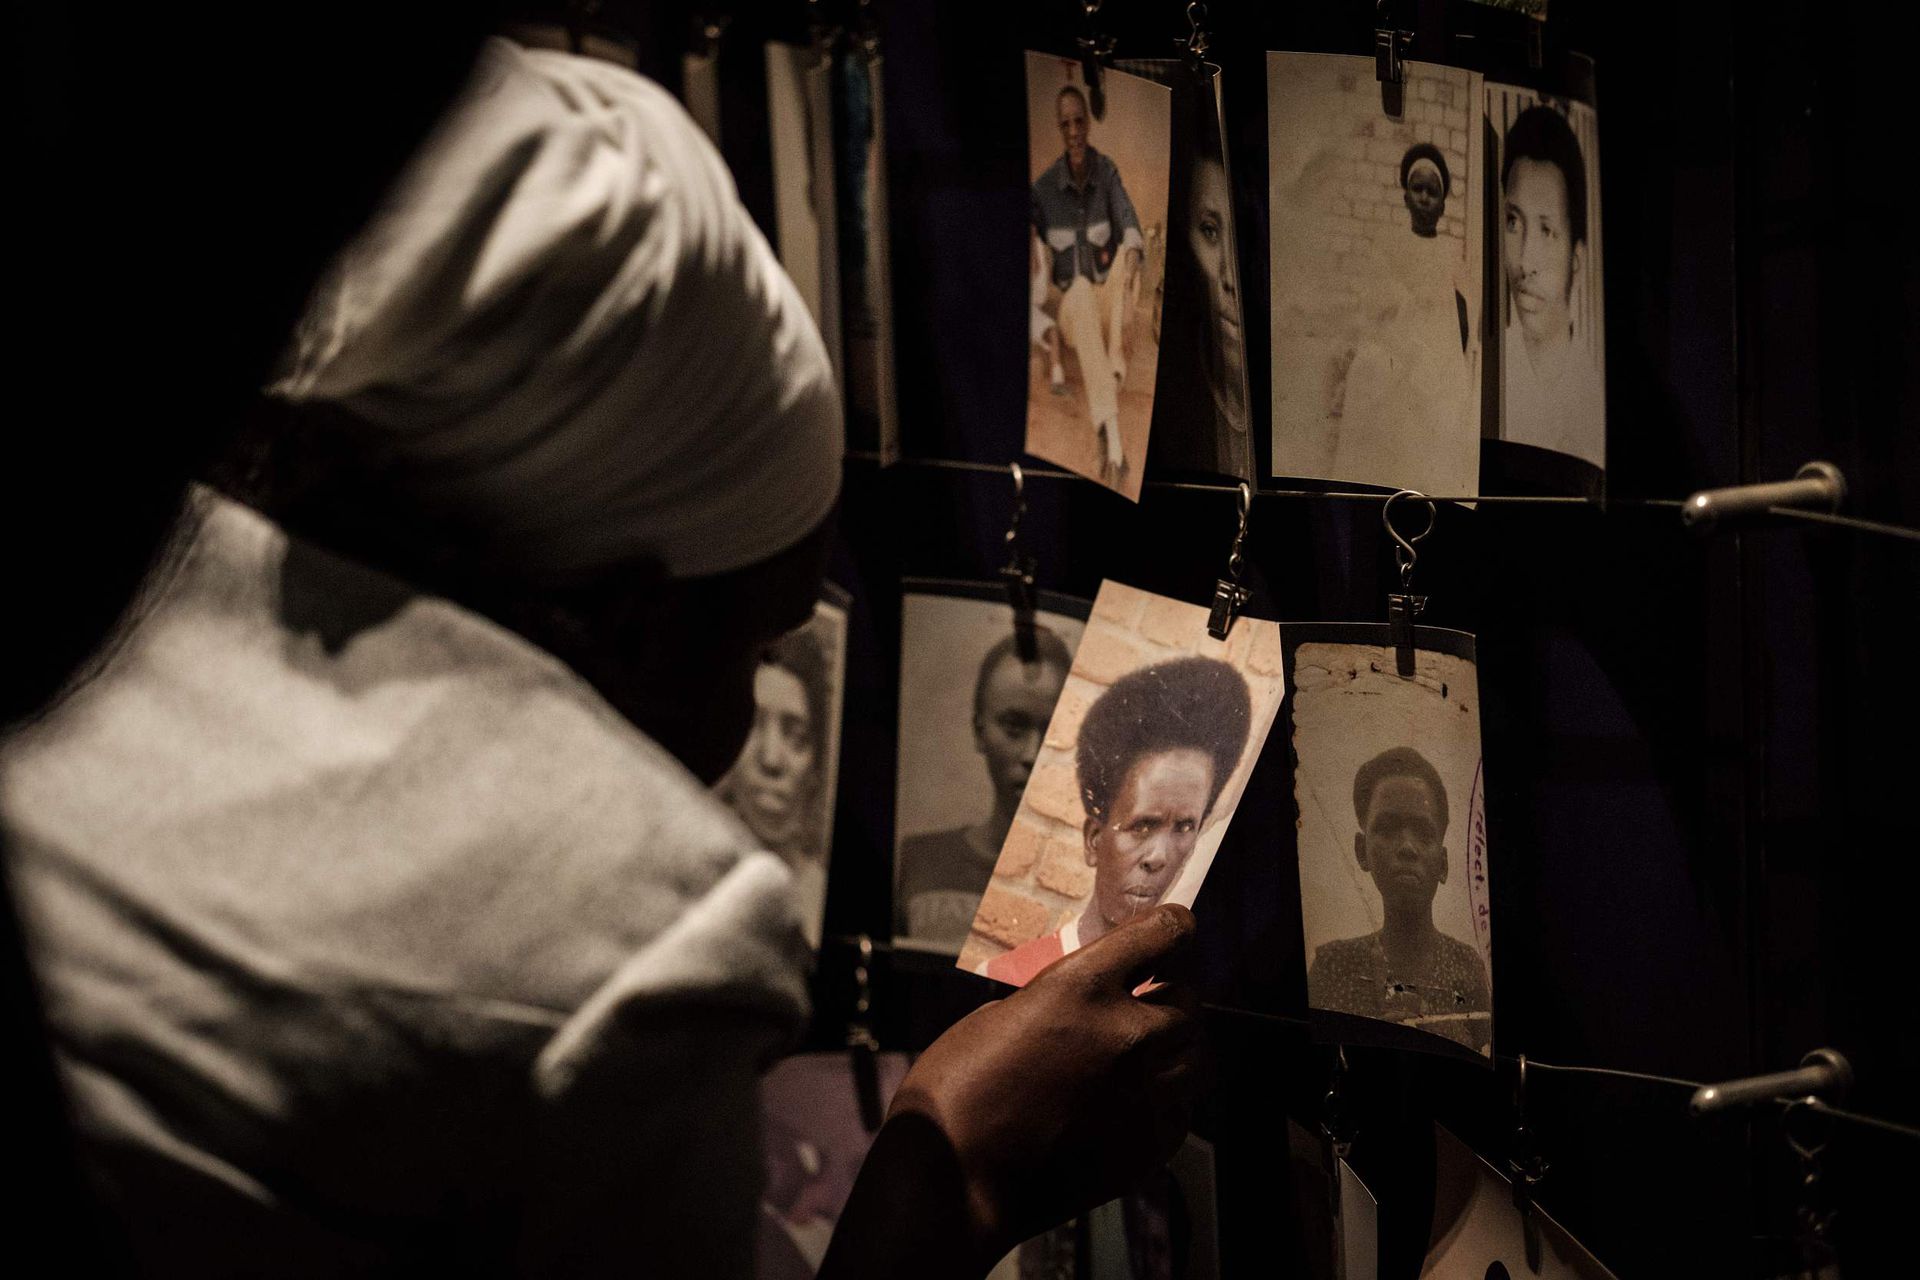 1994年，卢旺达发生了迄今为止世界上最严重的种族灭绝行为之一。胡图族极端主义分子屠杀了至少50万图西族平民，数十年来这个平民被迫伤亡。（VCG）